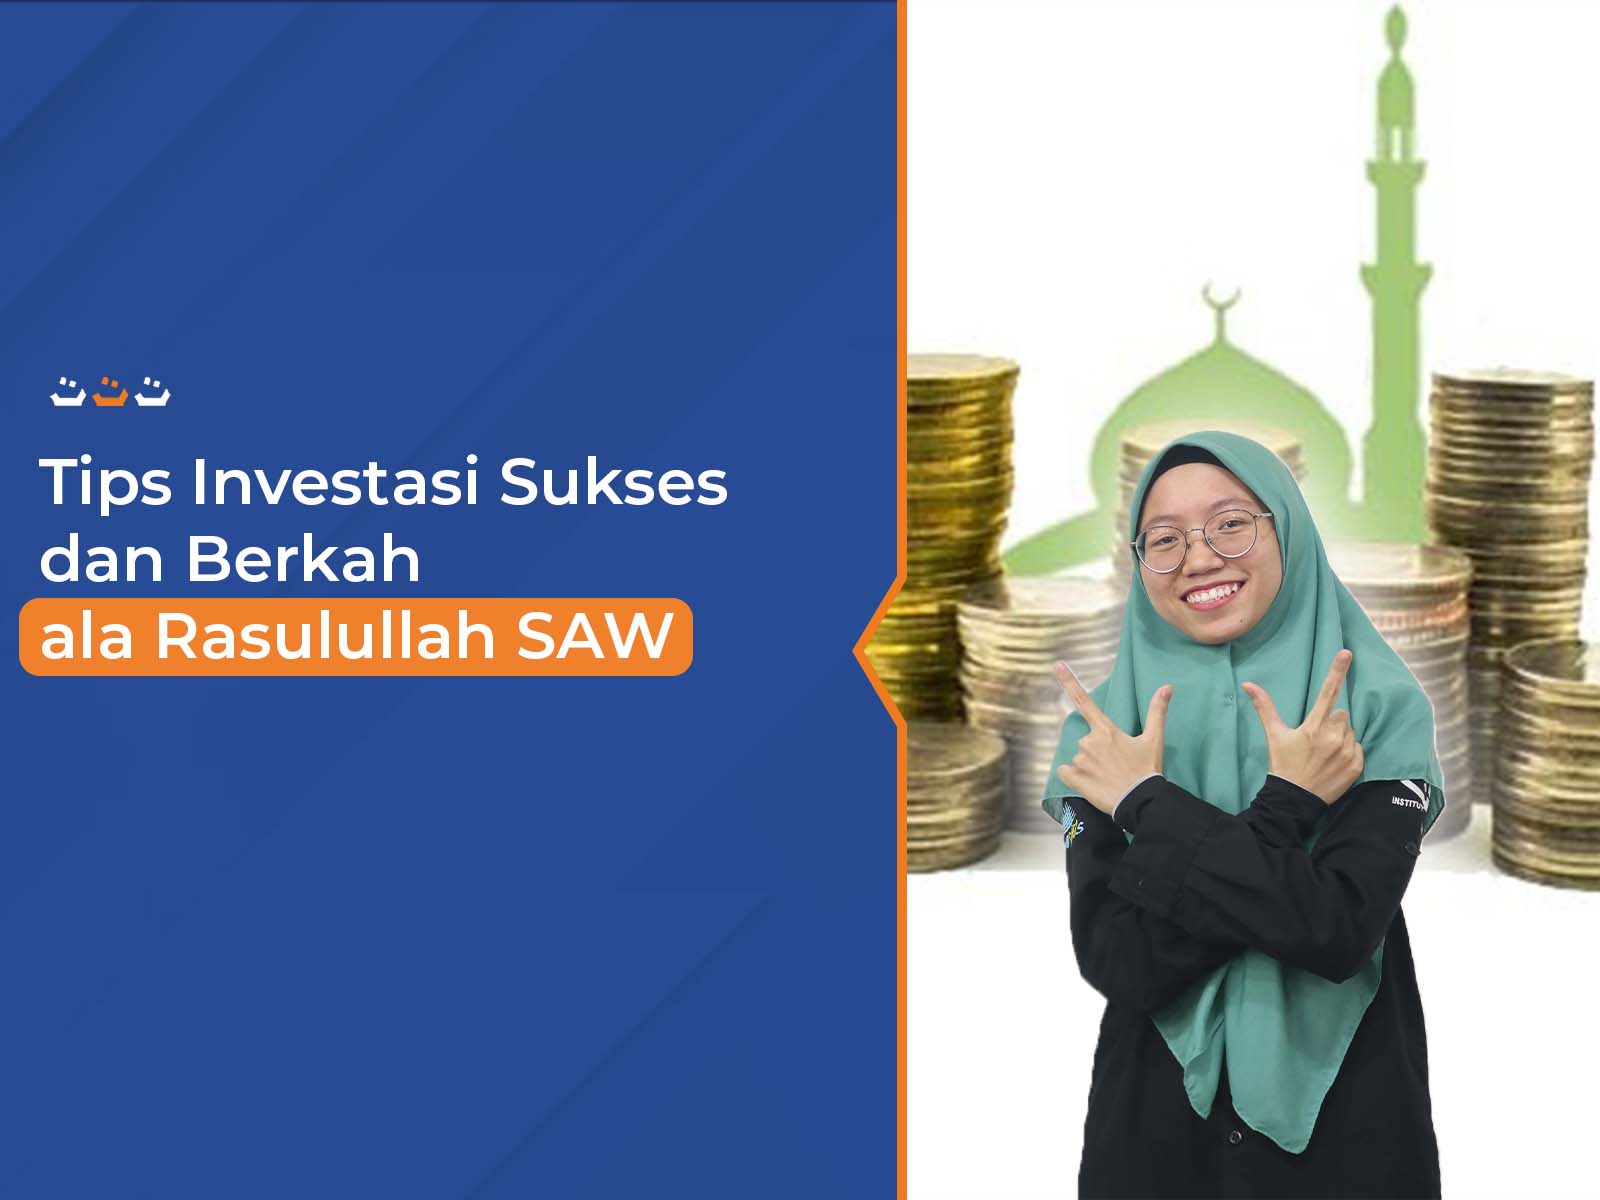 Tips_Investasi_Sukses_dan_Berkah_ala_Rasulullah_SAW